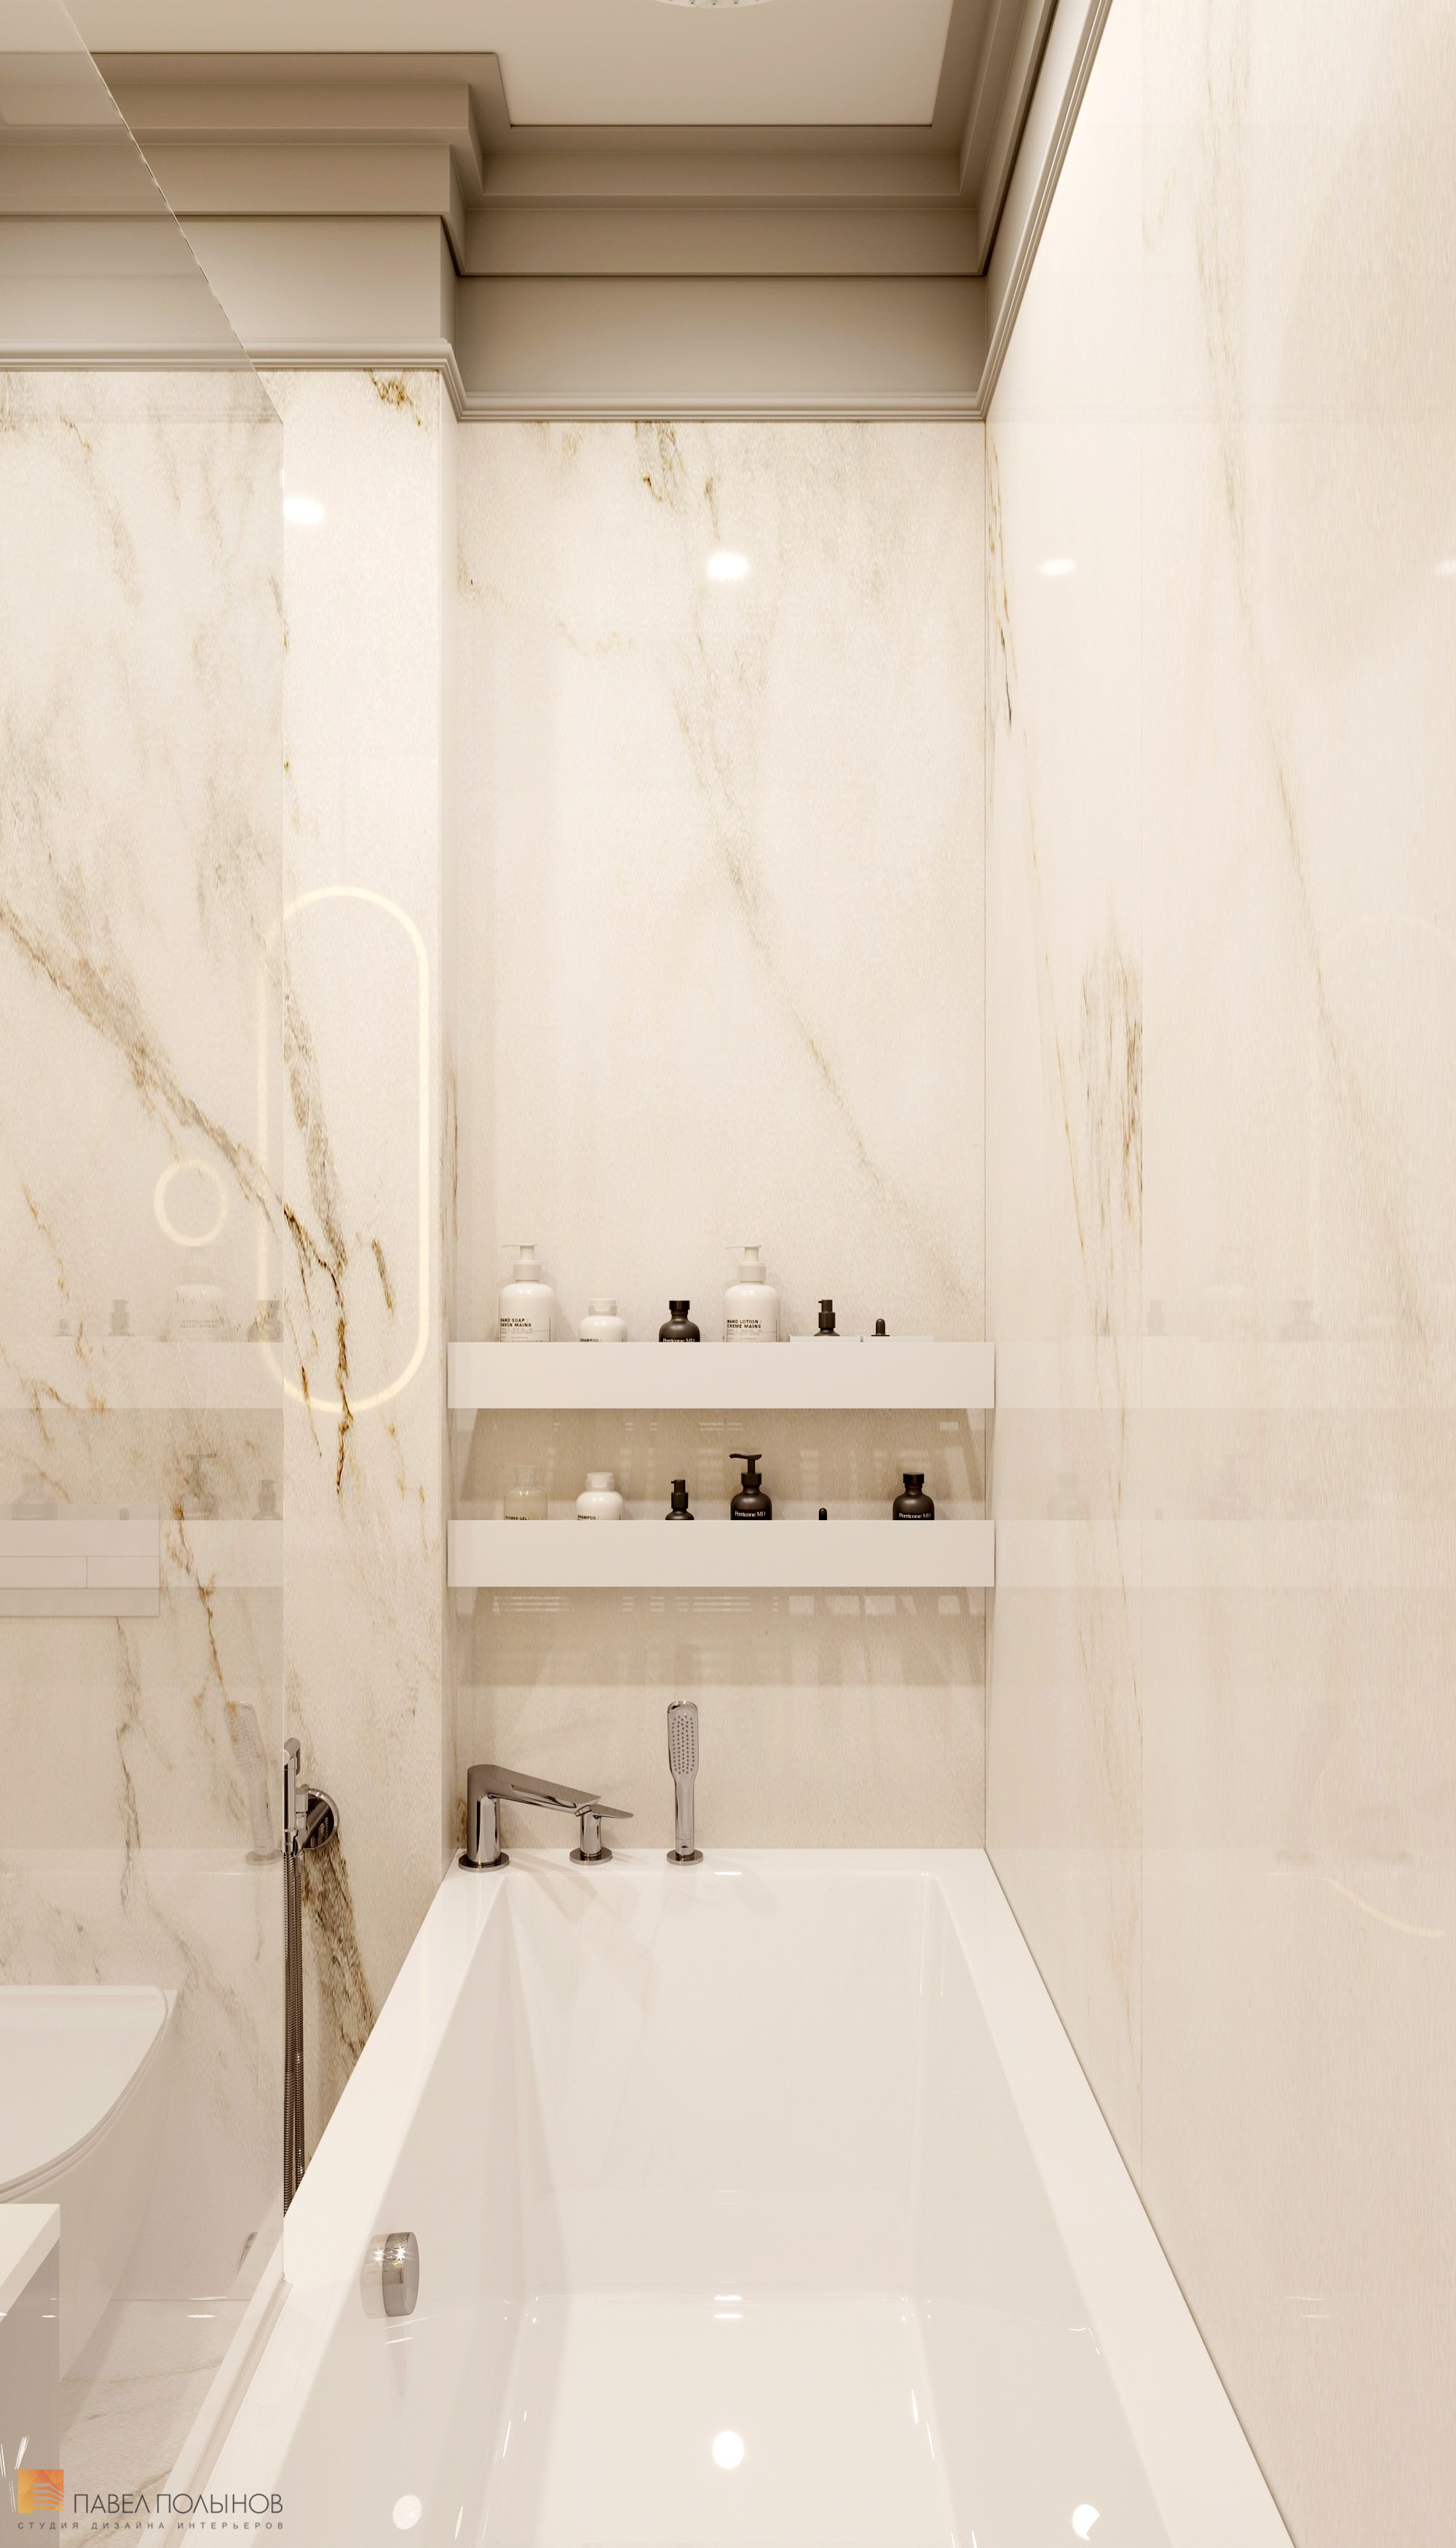 Фото дизайн интерьера ванной комнаты из проекта «Квартира в стиле неоклассики, ЖК «Алые Паруса», 124 кв.м.»